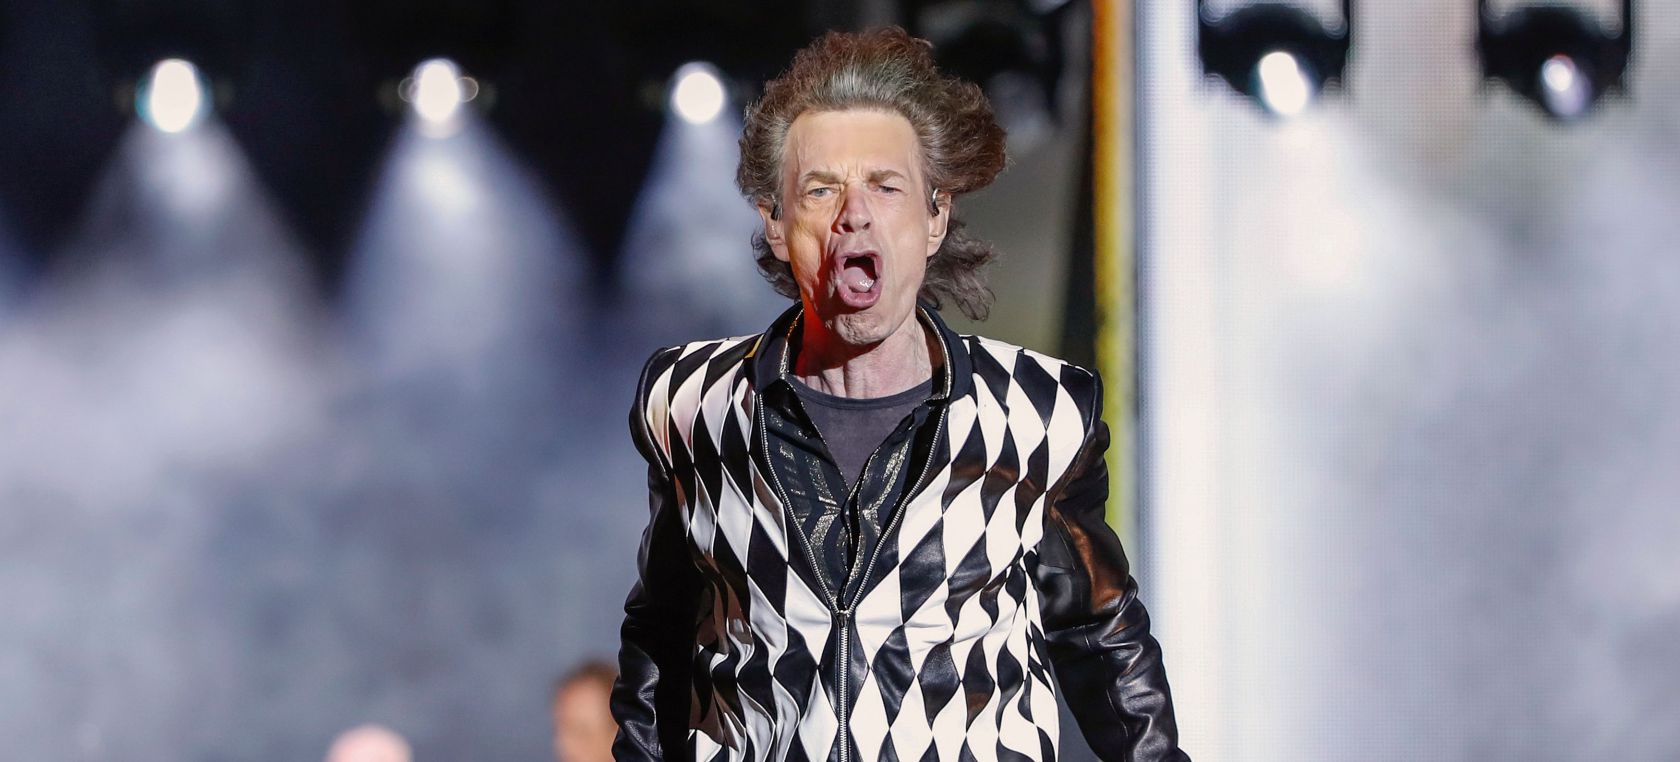 Mick Jagger cumple 78 años: ocho curiosidades que (quizá) no sabías del líder de los Rolling Stones